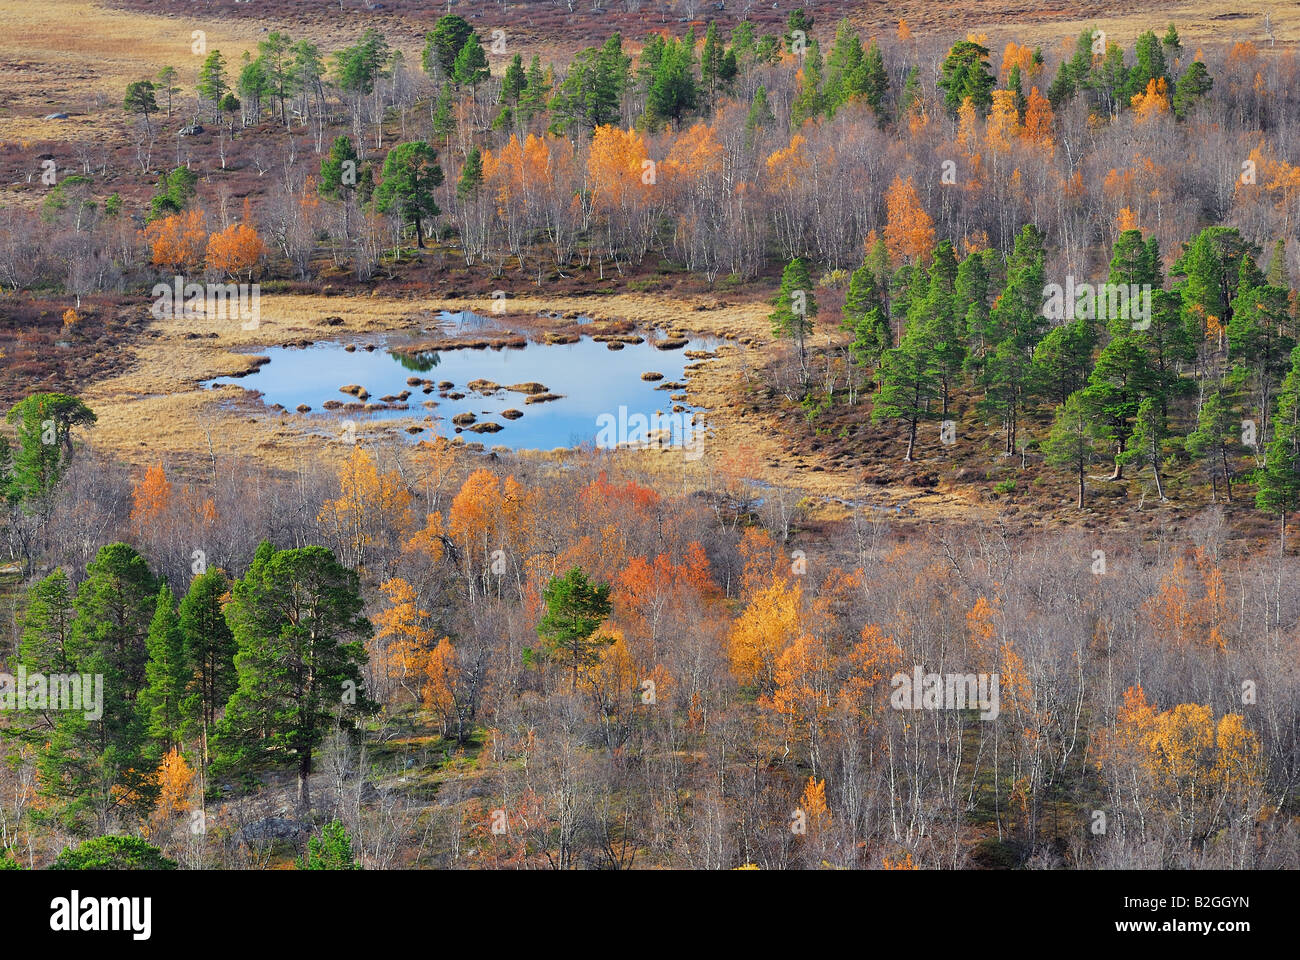 Marais marais np le parc national abisko paysage norrbotten Laponie Suède europe Banque D'Images